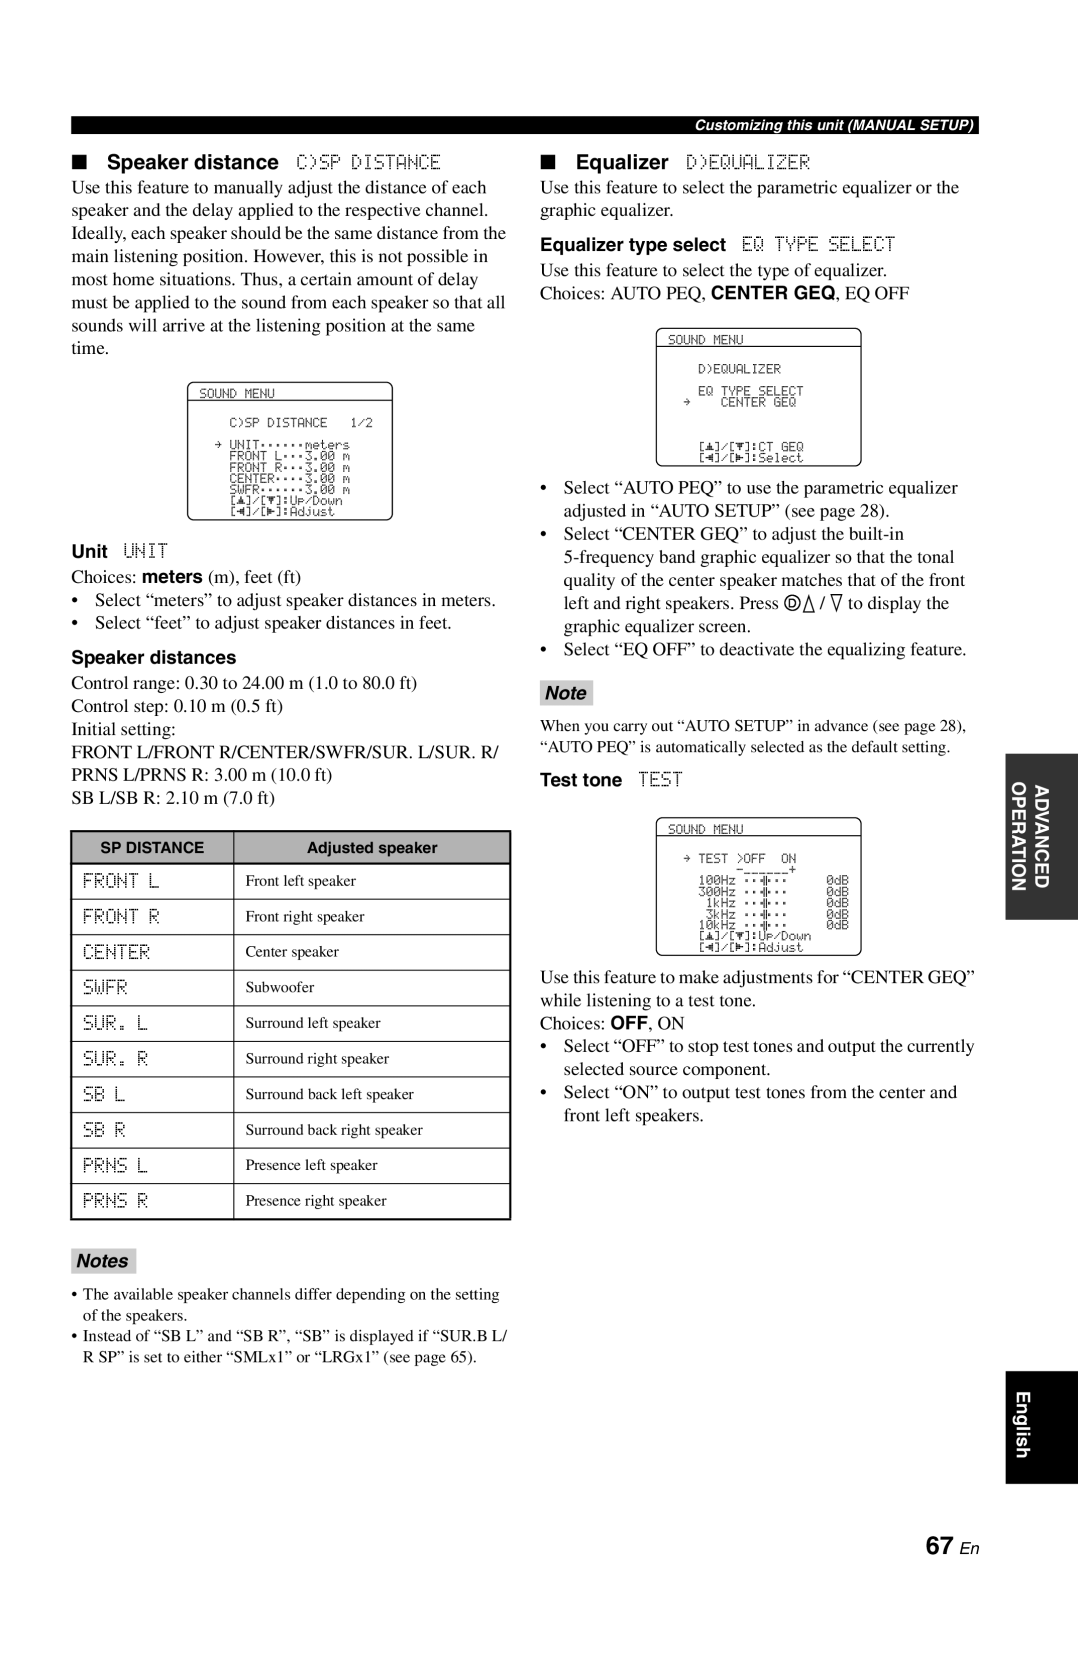 Yamaha DSP-AX861SE owner manual 67 En, Speaker distance CSP DISTANCE, Unit UNIT, Speaker distances, Test tone TEST 